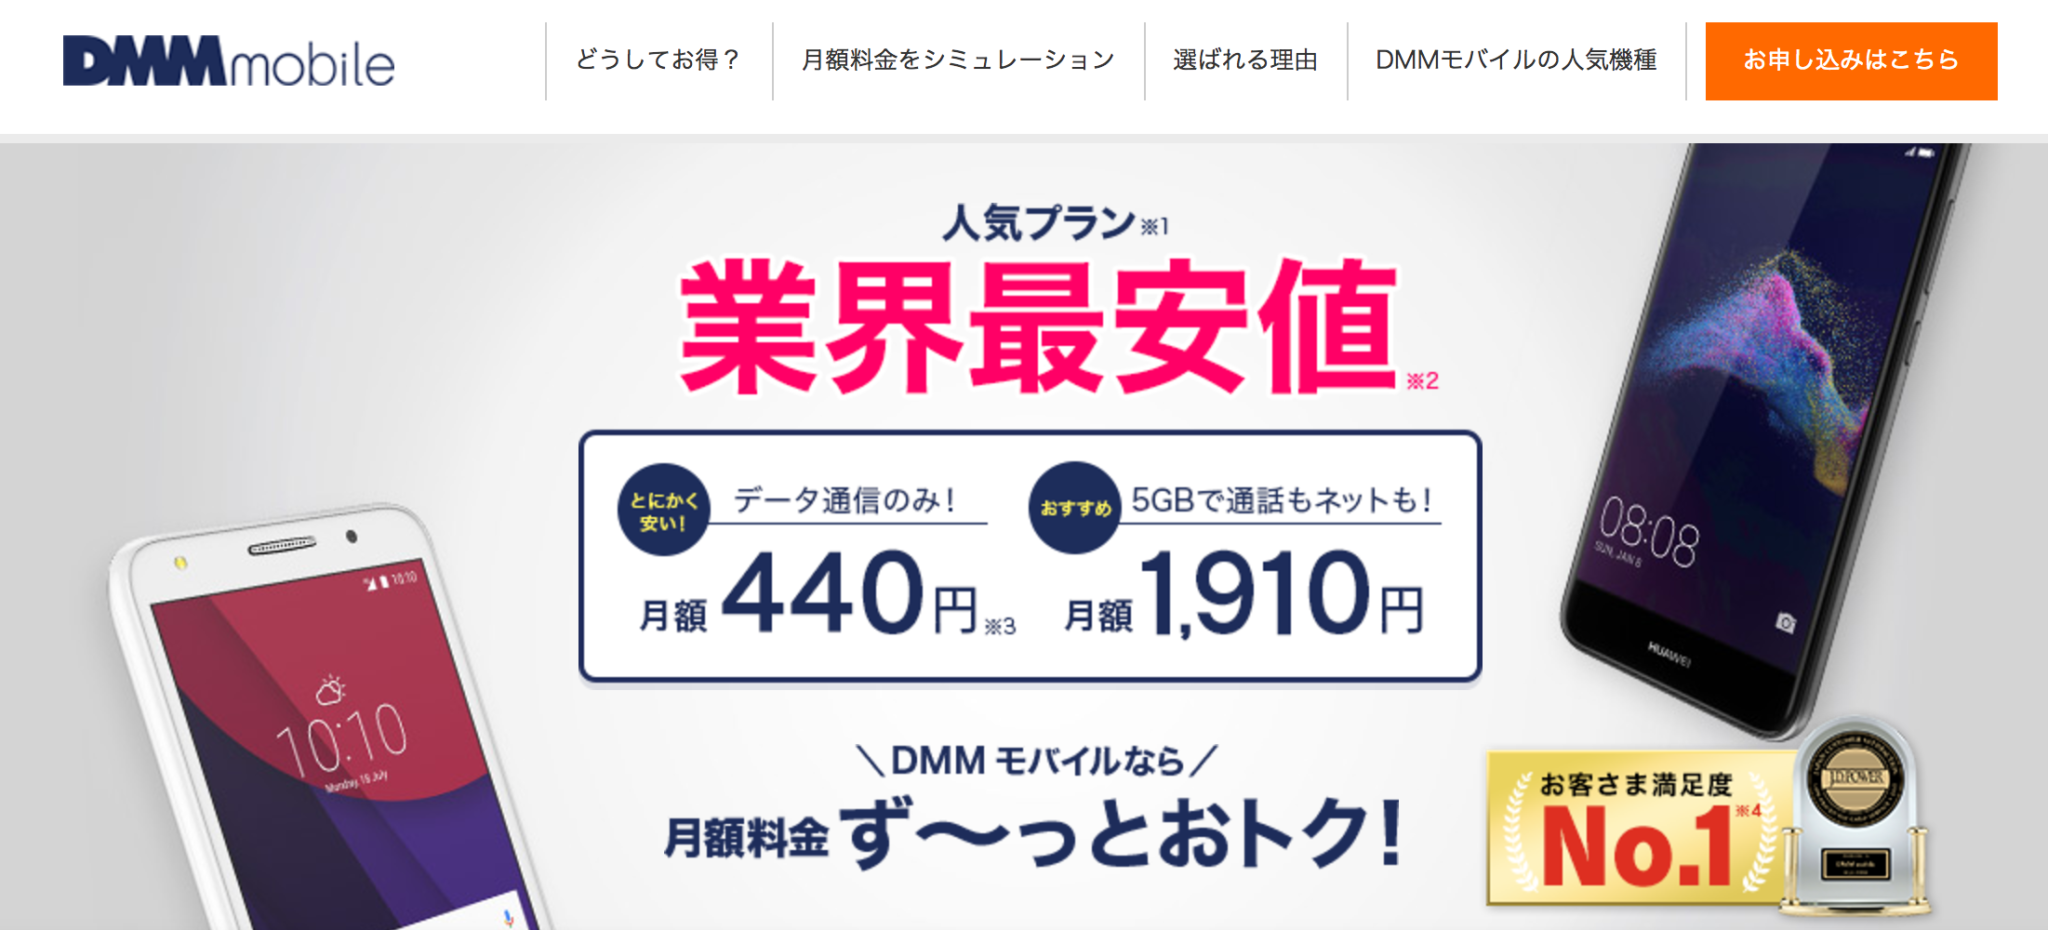 DMMモバイル公式サイト